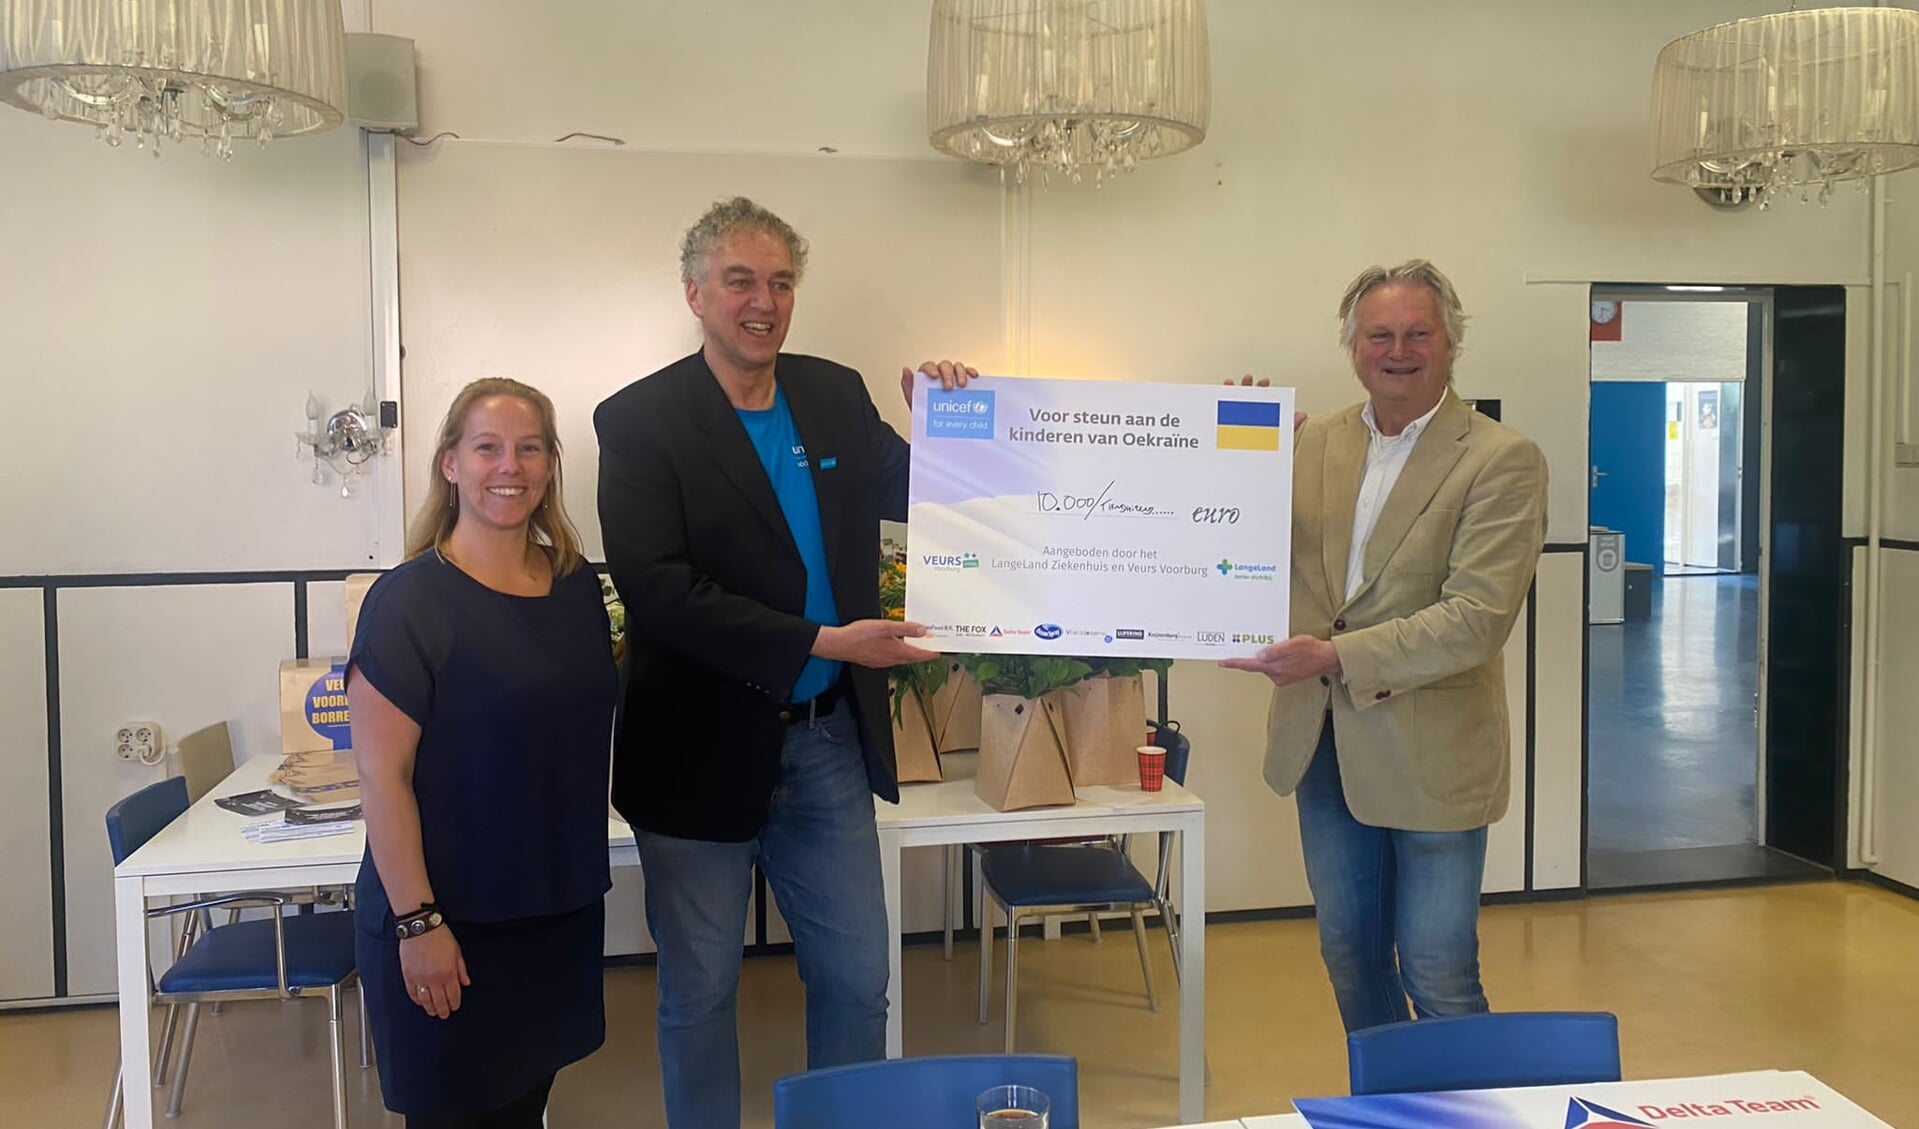 Ruth Sluijter en Pier Eringa overhandigen een cheque van 10.000 euro aan Unicef-vertegenwoordiger Jan Marijnissen. (Foto: PR)